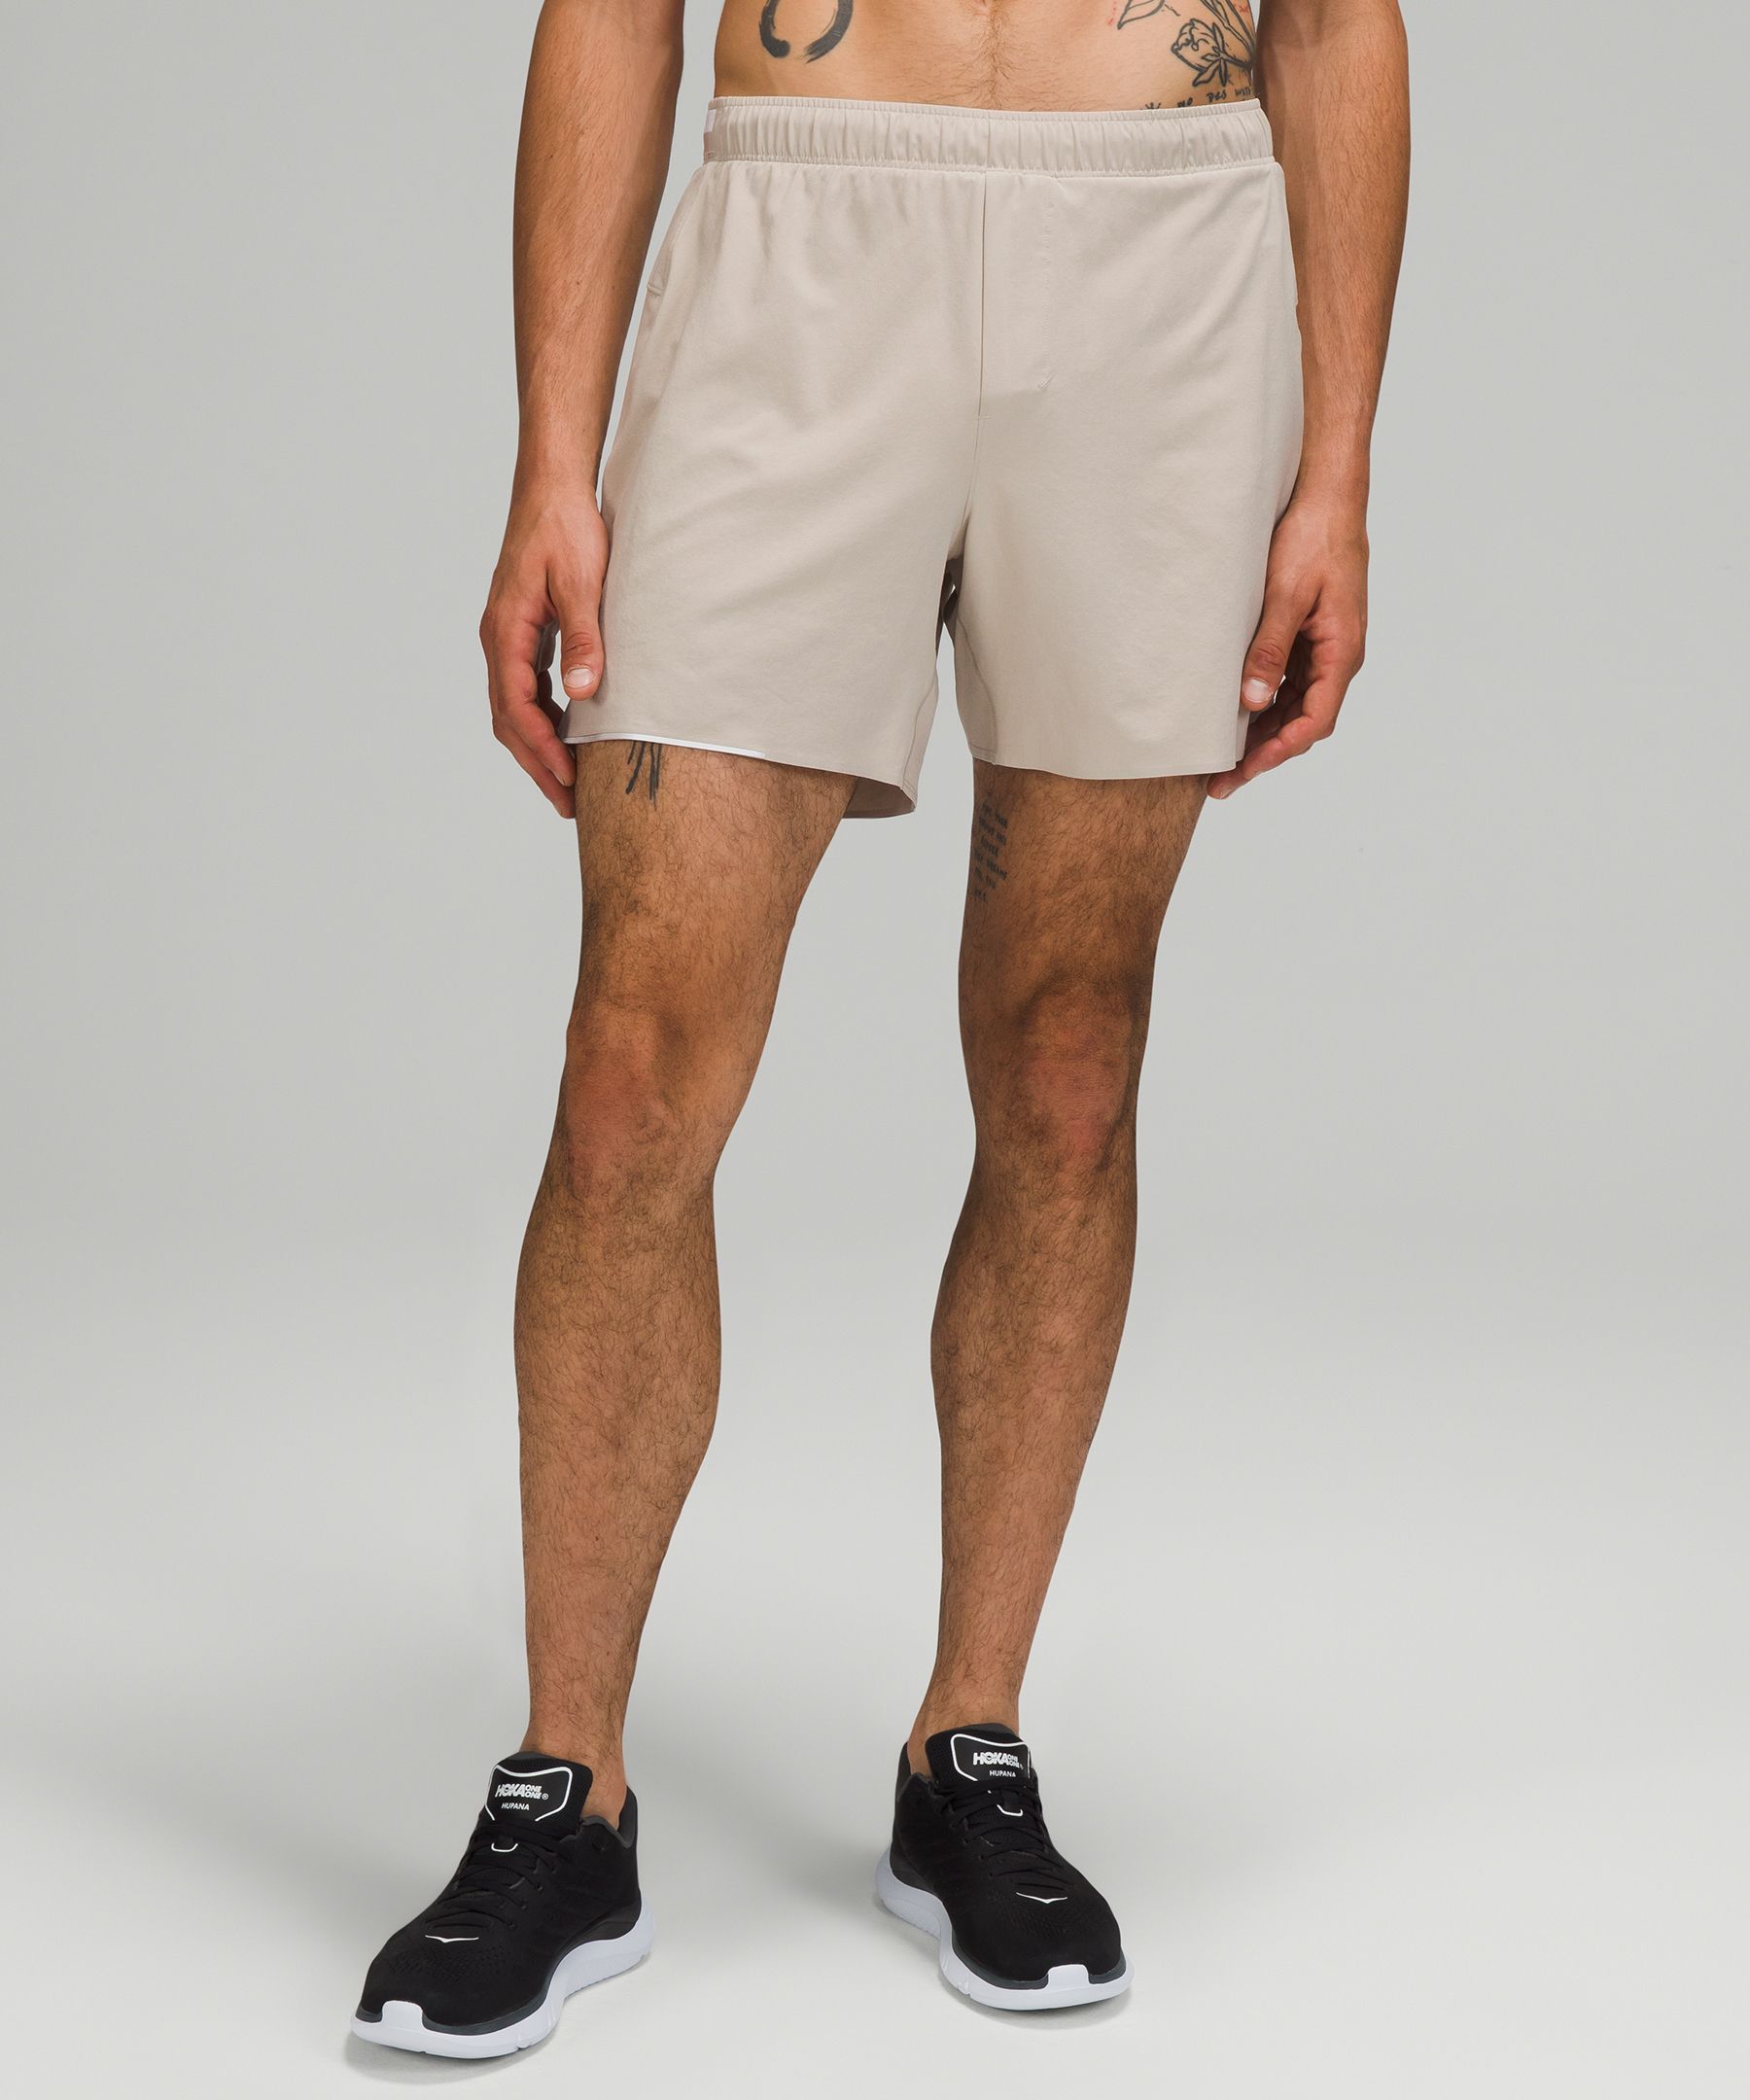 LULULEMON Surge 6 Straight-Leg Swift™ Shorts for Men